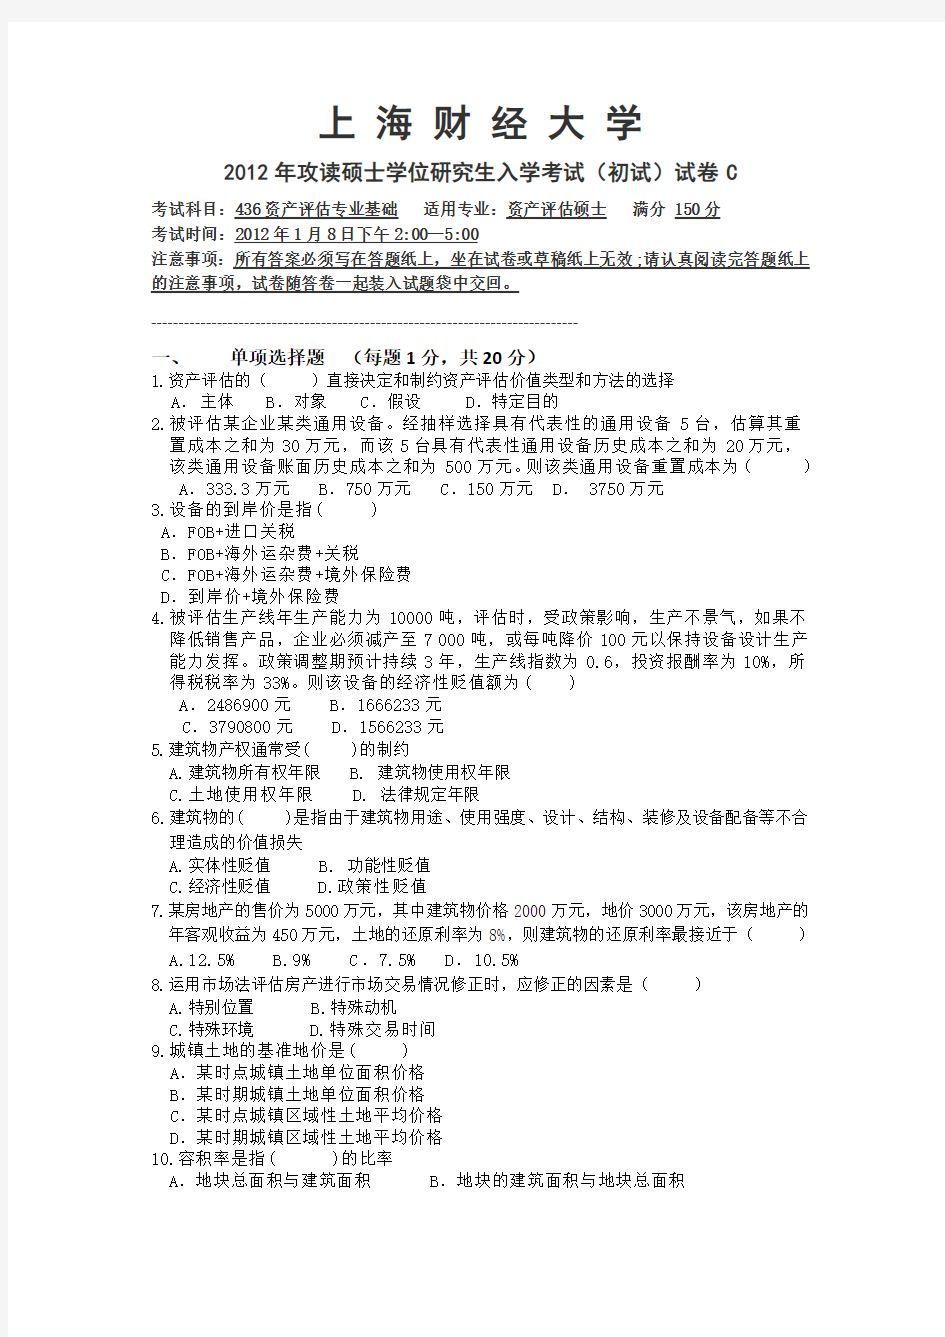 上海财经大学436资产评估模拟卷三介绍